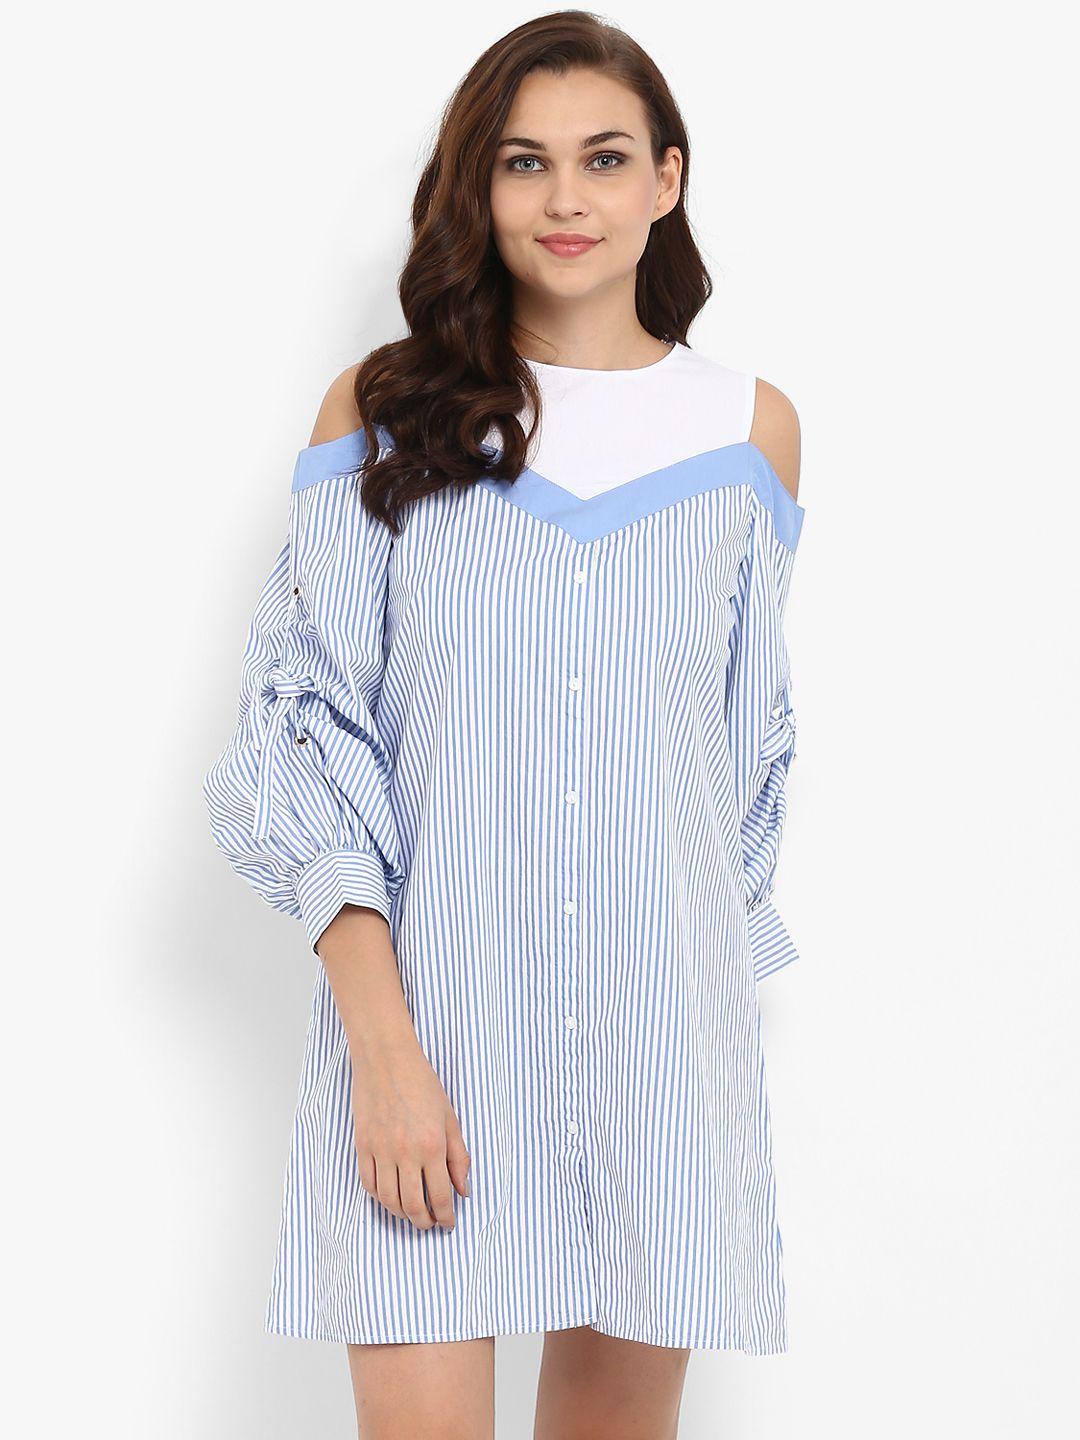 athah women blue & white striped a-line dress